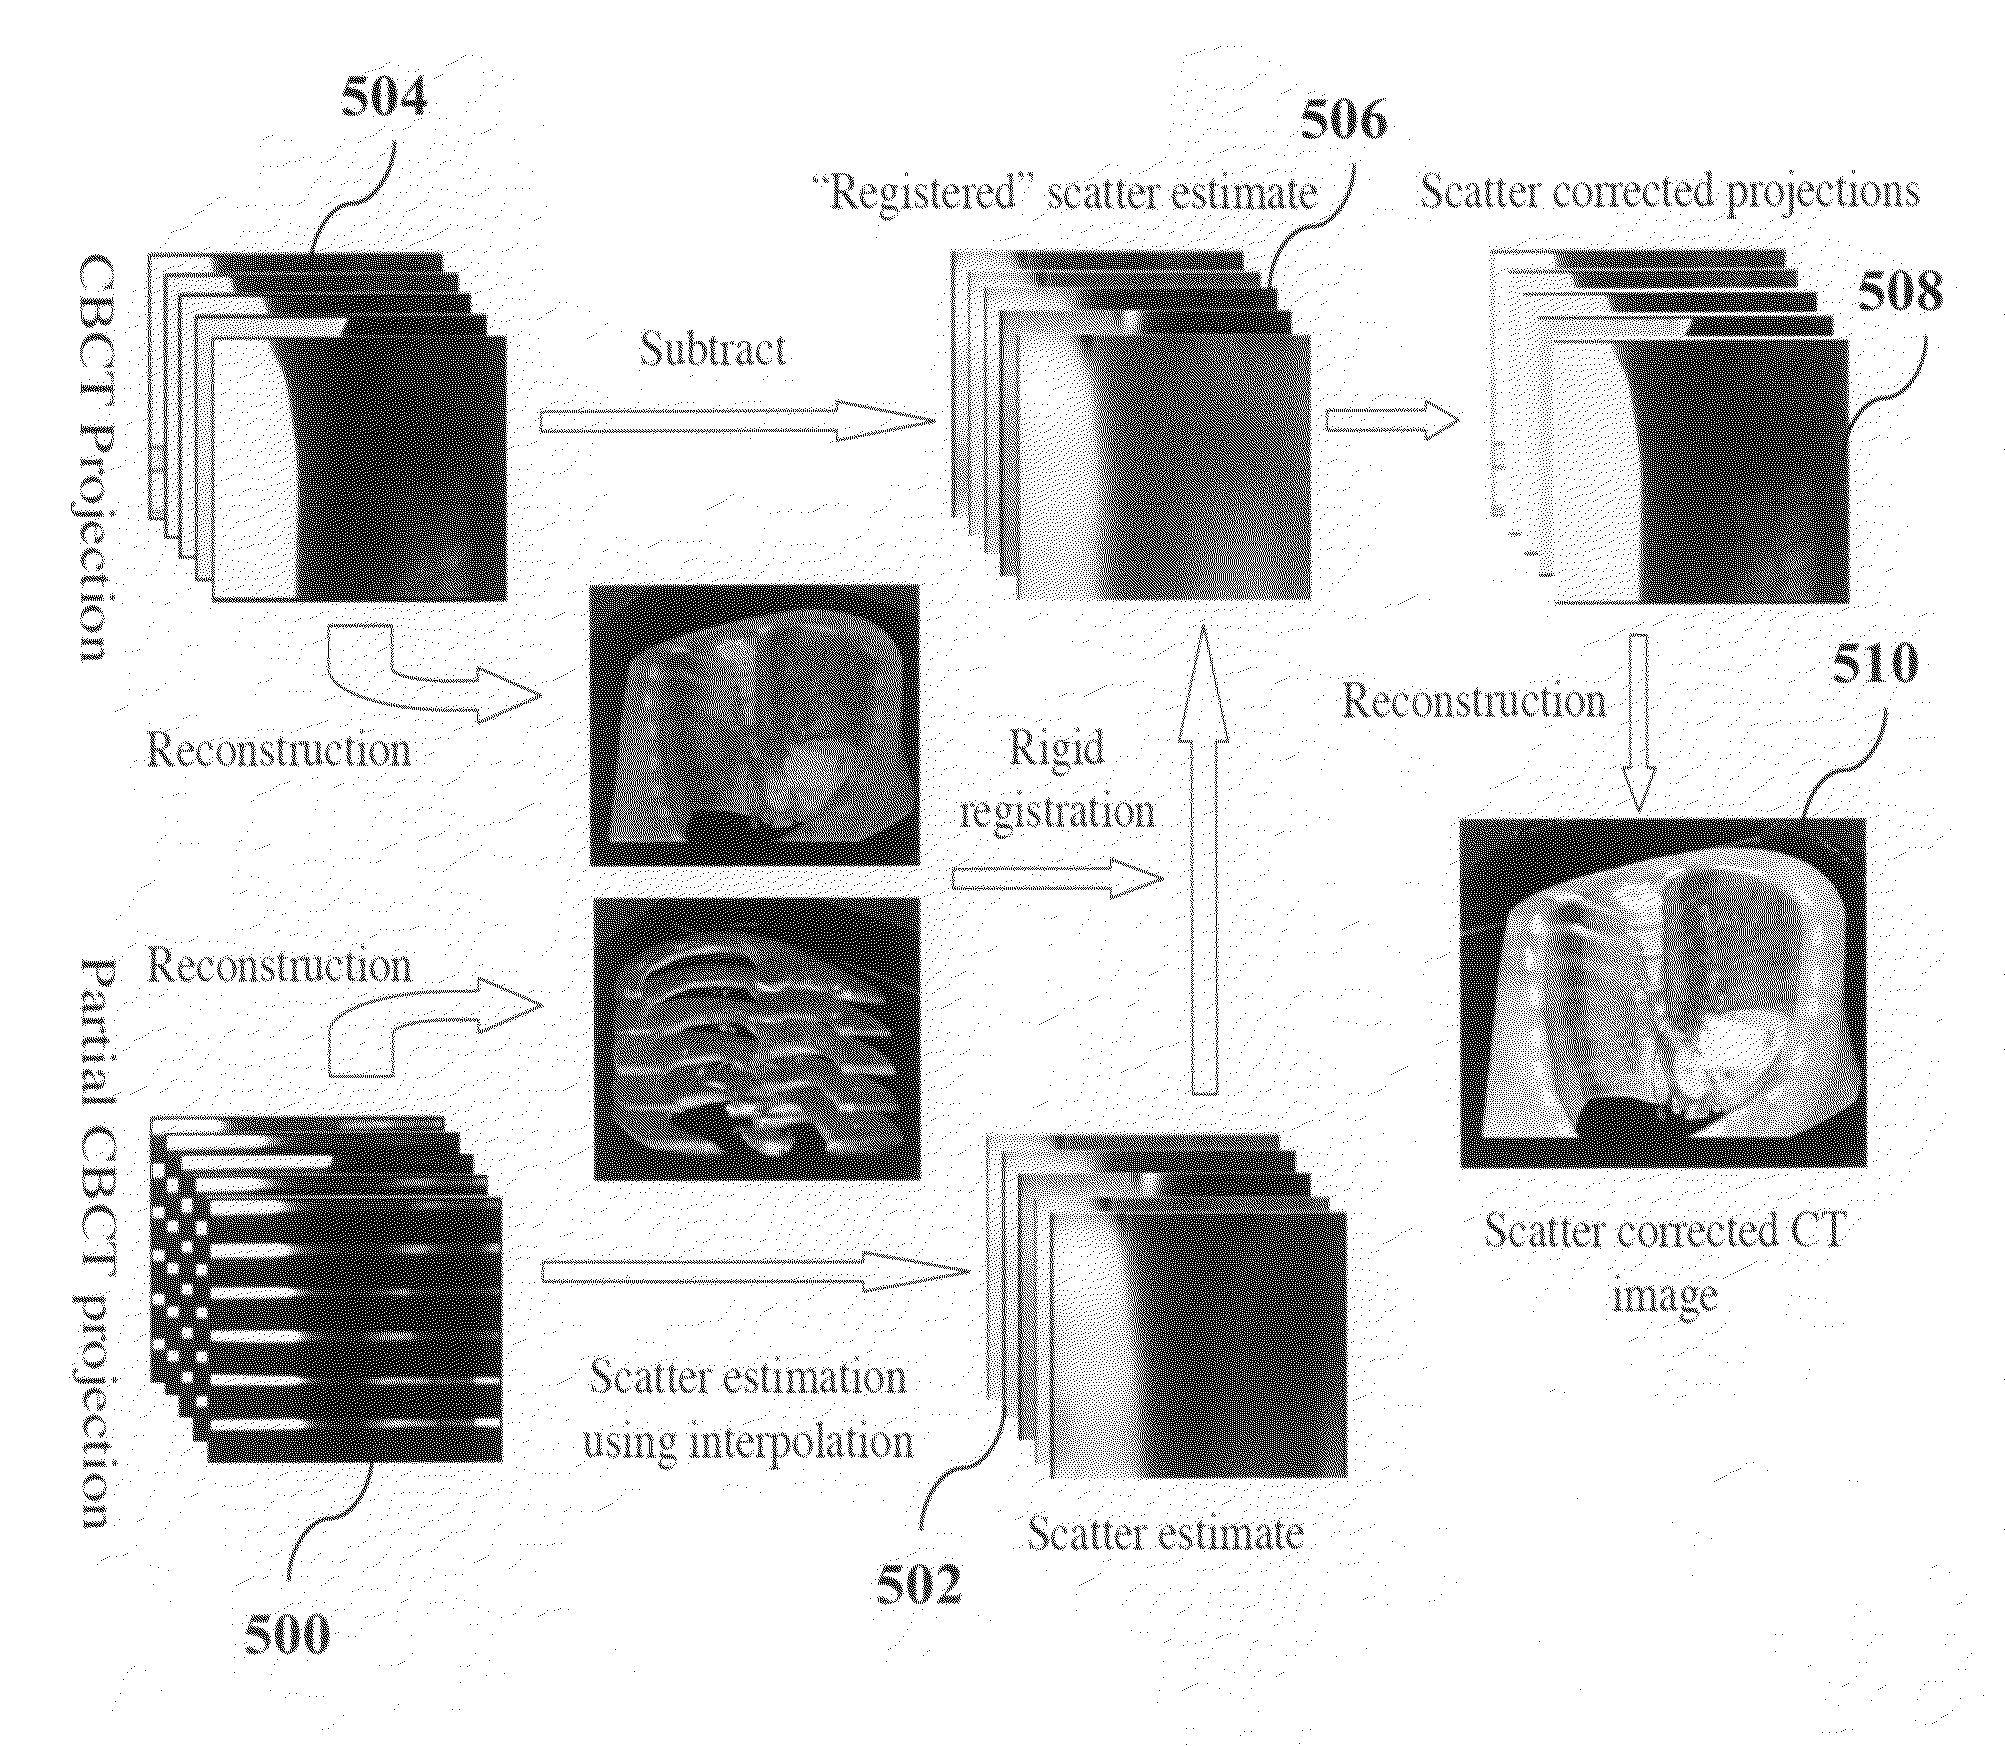 Cone-beam CT imaging scheme